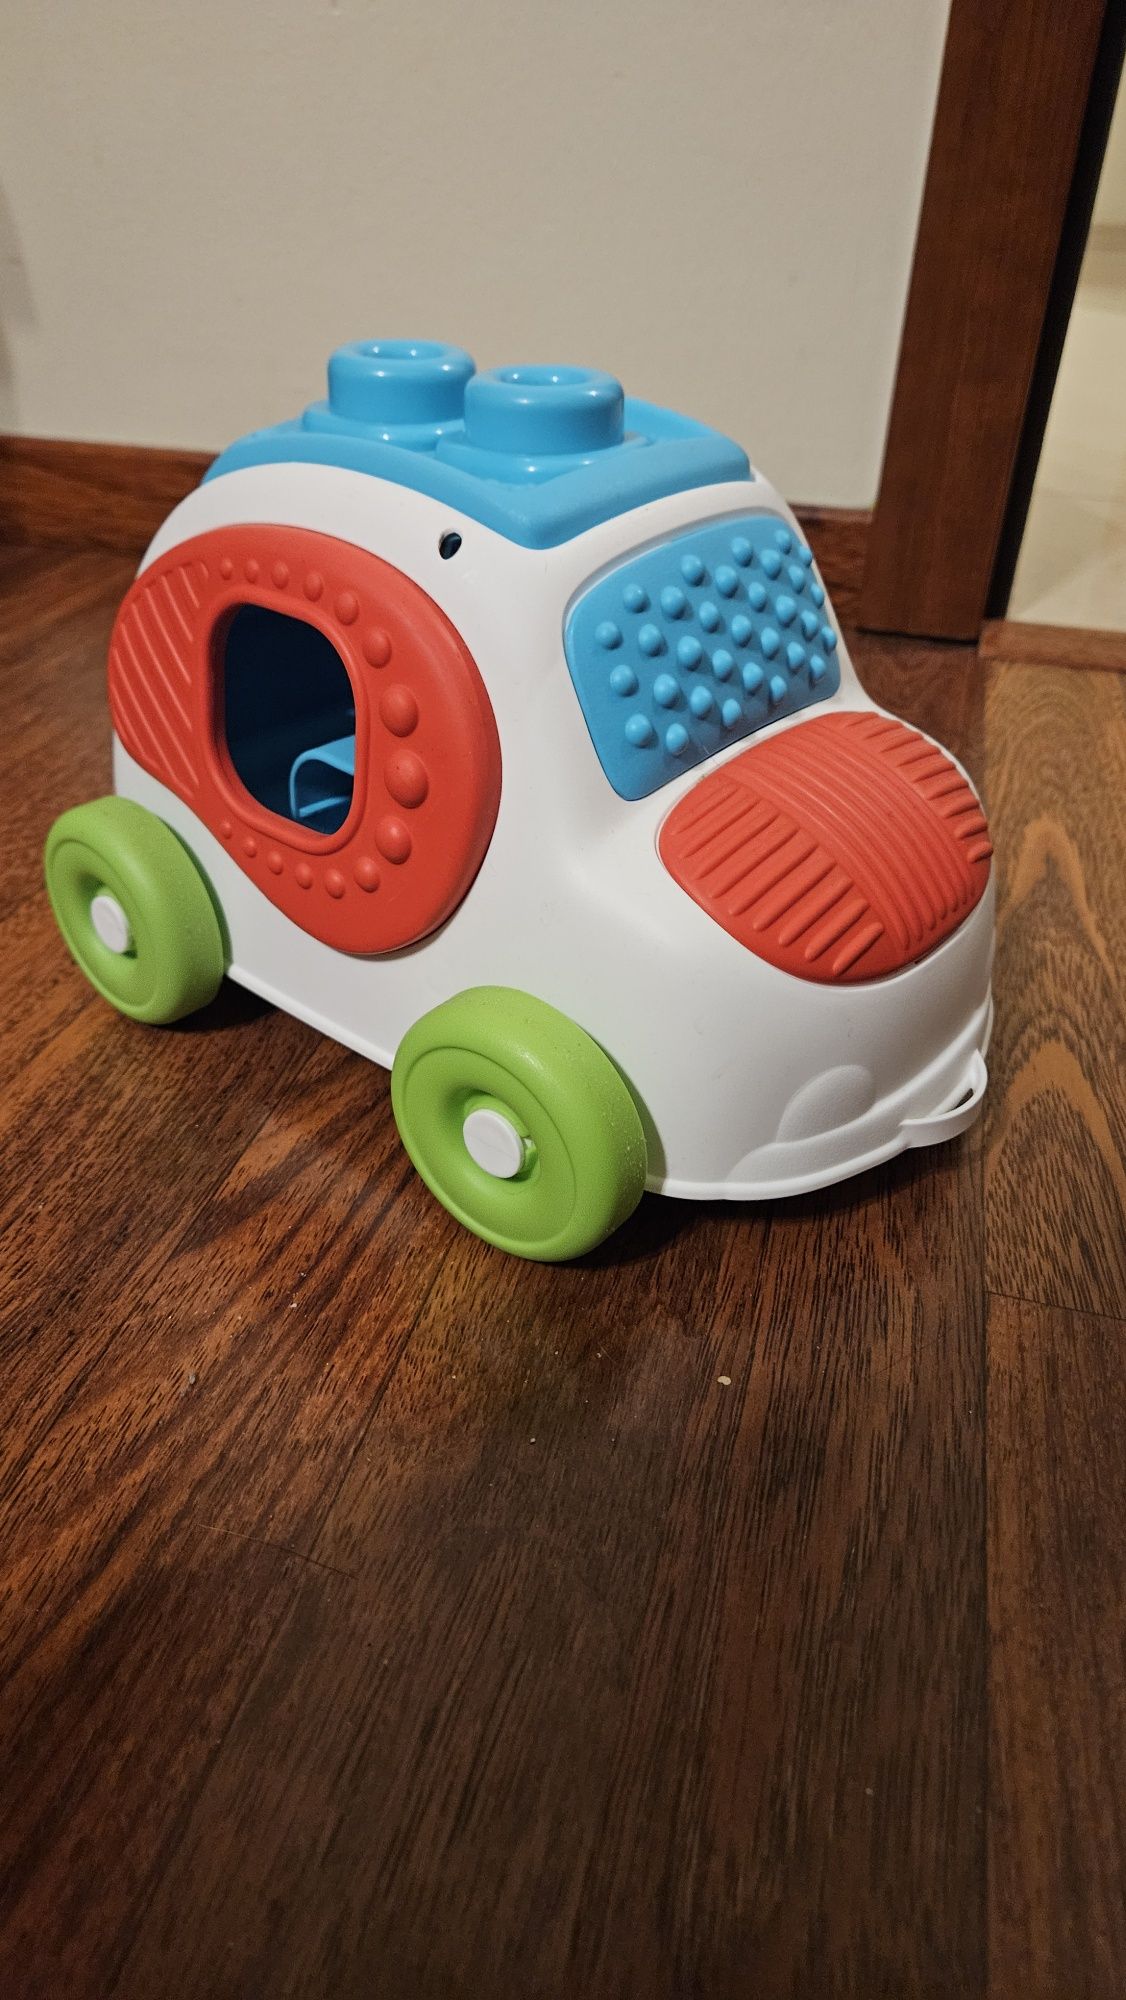 Samochodzik dla maluchów - duży, sensoryczny, montessori